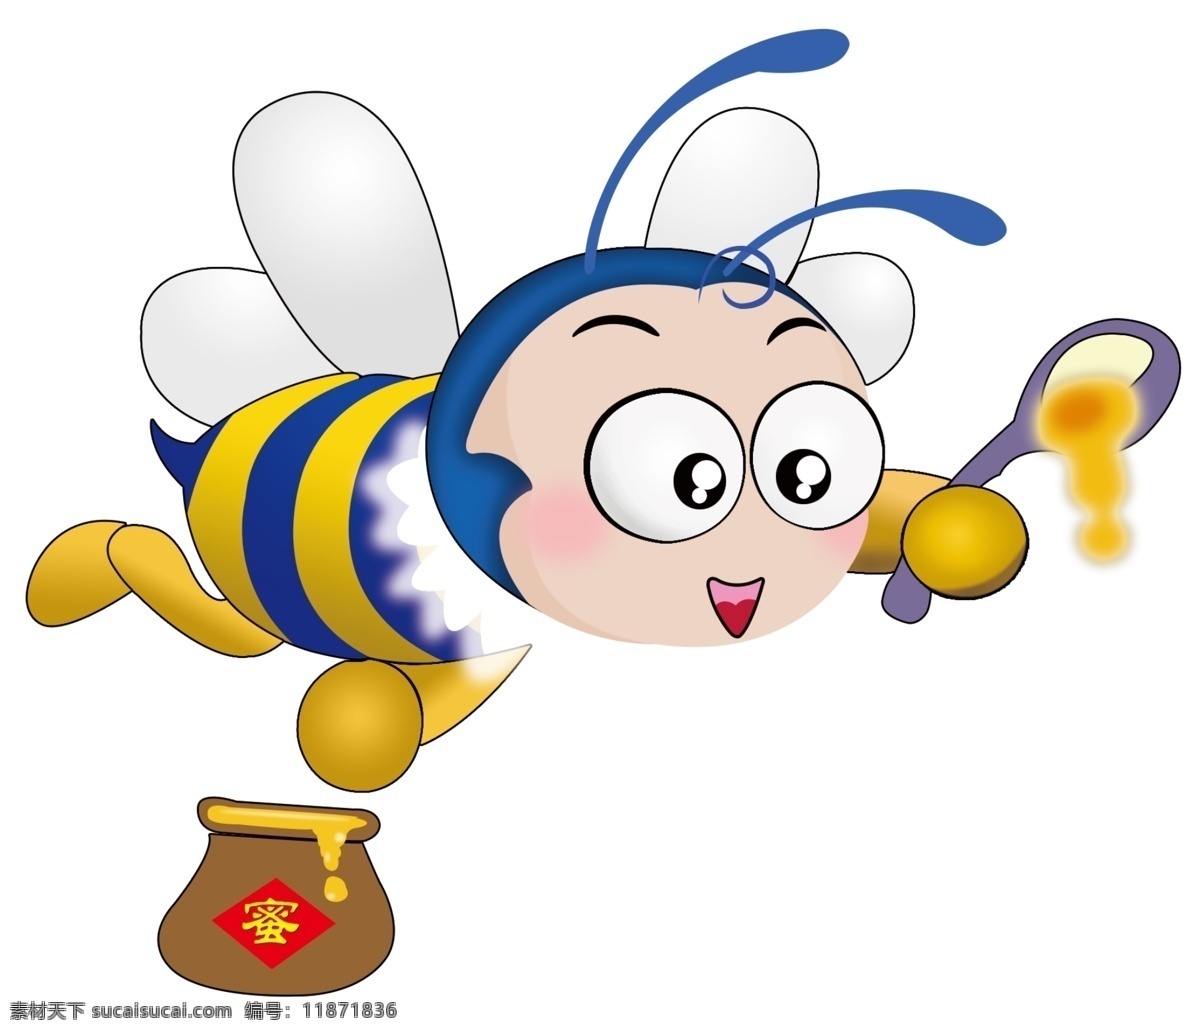 蜜蜂采蜜 卡通 动画 动物 蜜蜂 高清 分层 动漫动画 动漫 人物 动漫人物